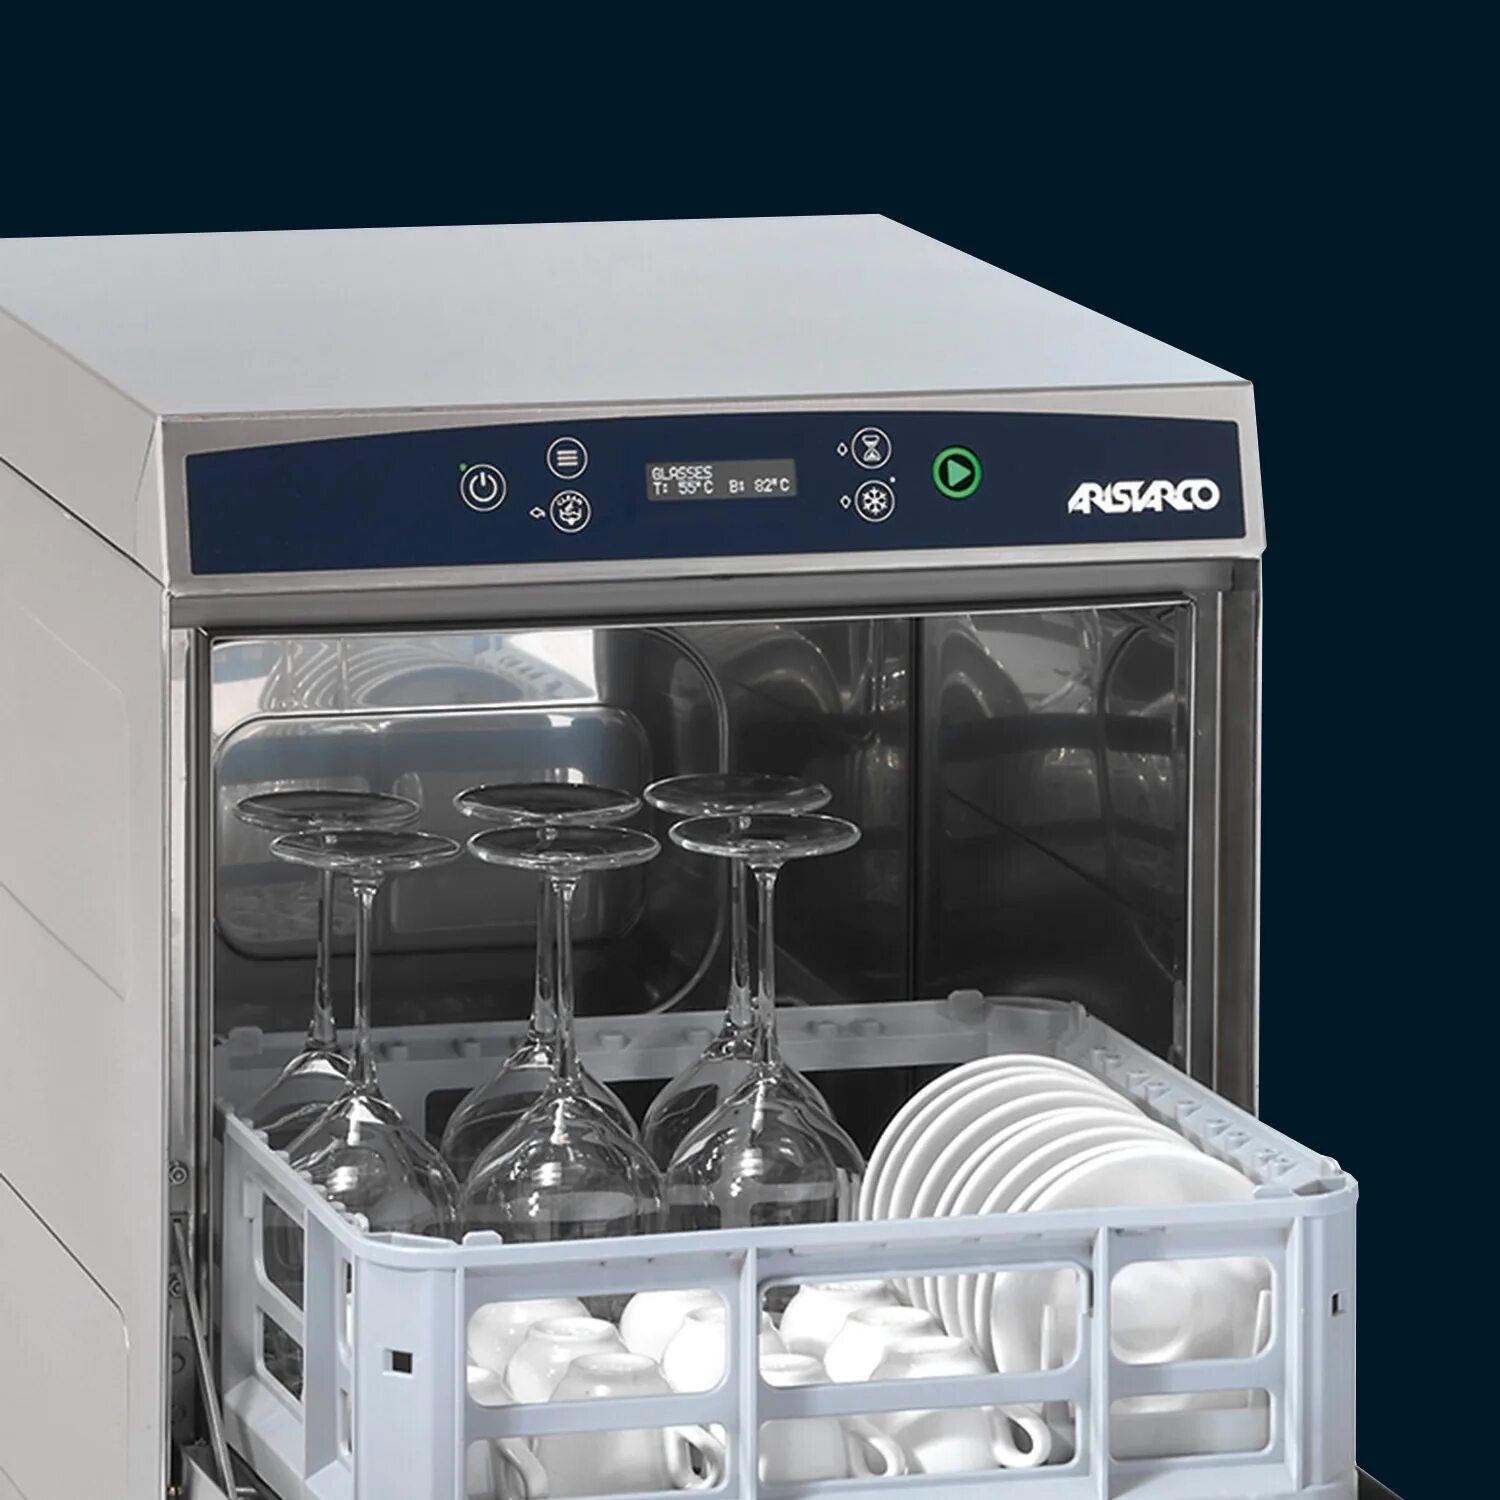 Посудомоечная машина Аристарко АН 1240. Посудомоечная машина ФД 5399. Aristarco посудомоечная машина AP 45.30 датчик давления. Посудомоечная машина Аристарко евро 3509.